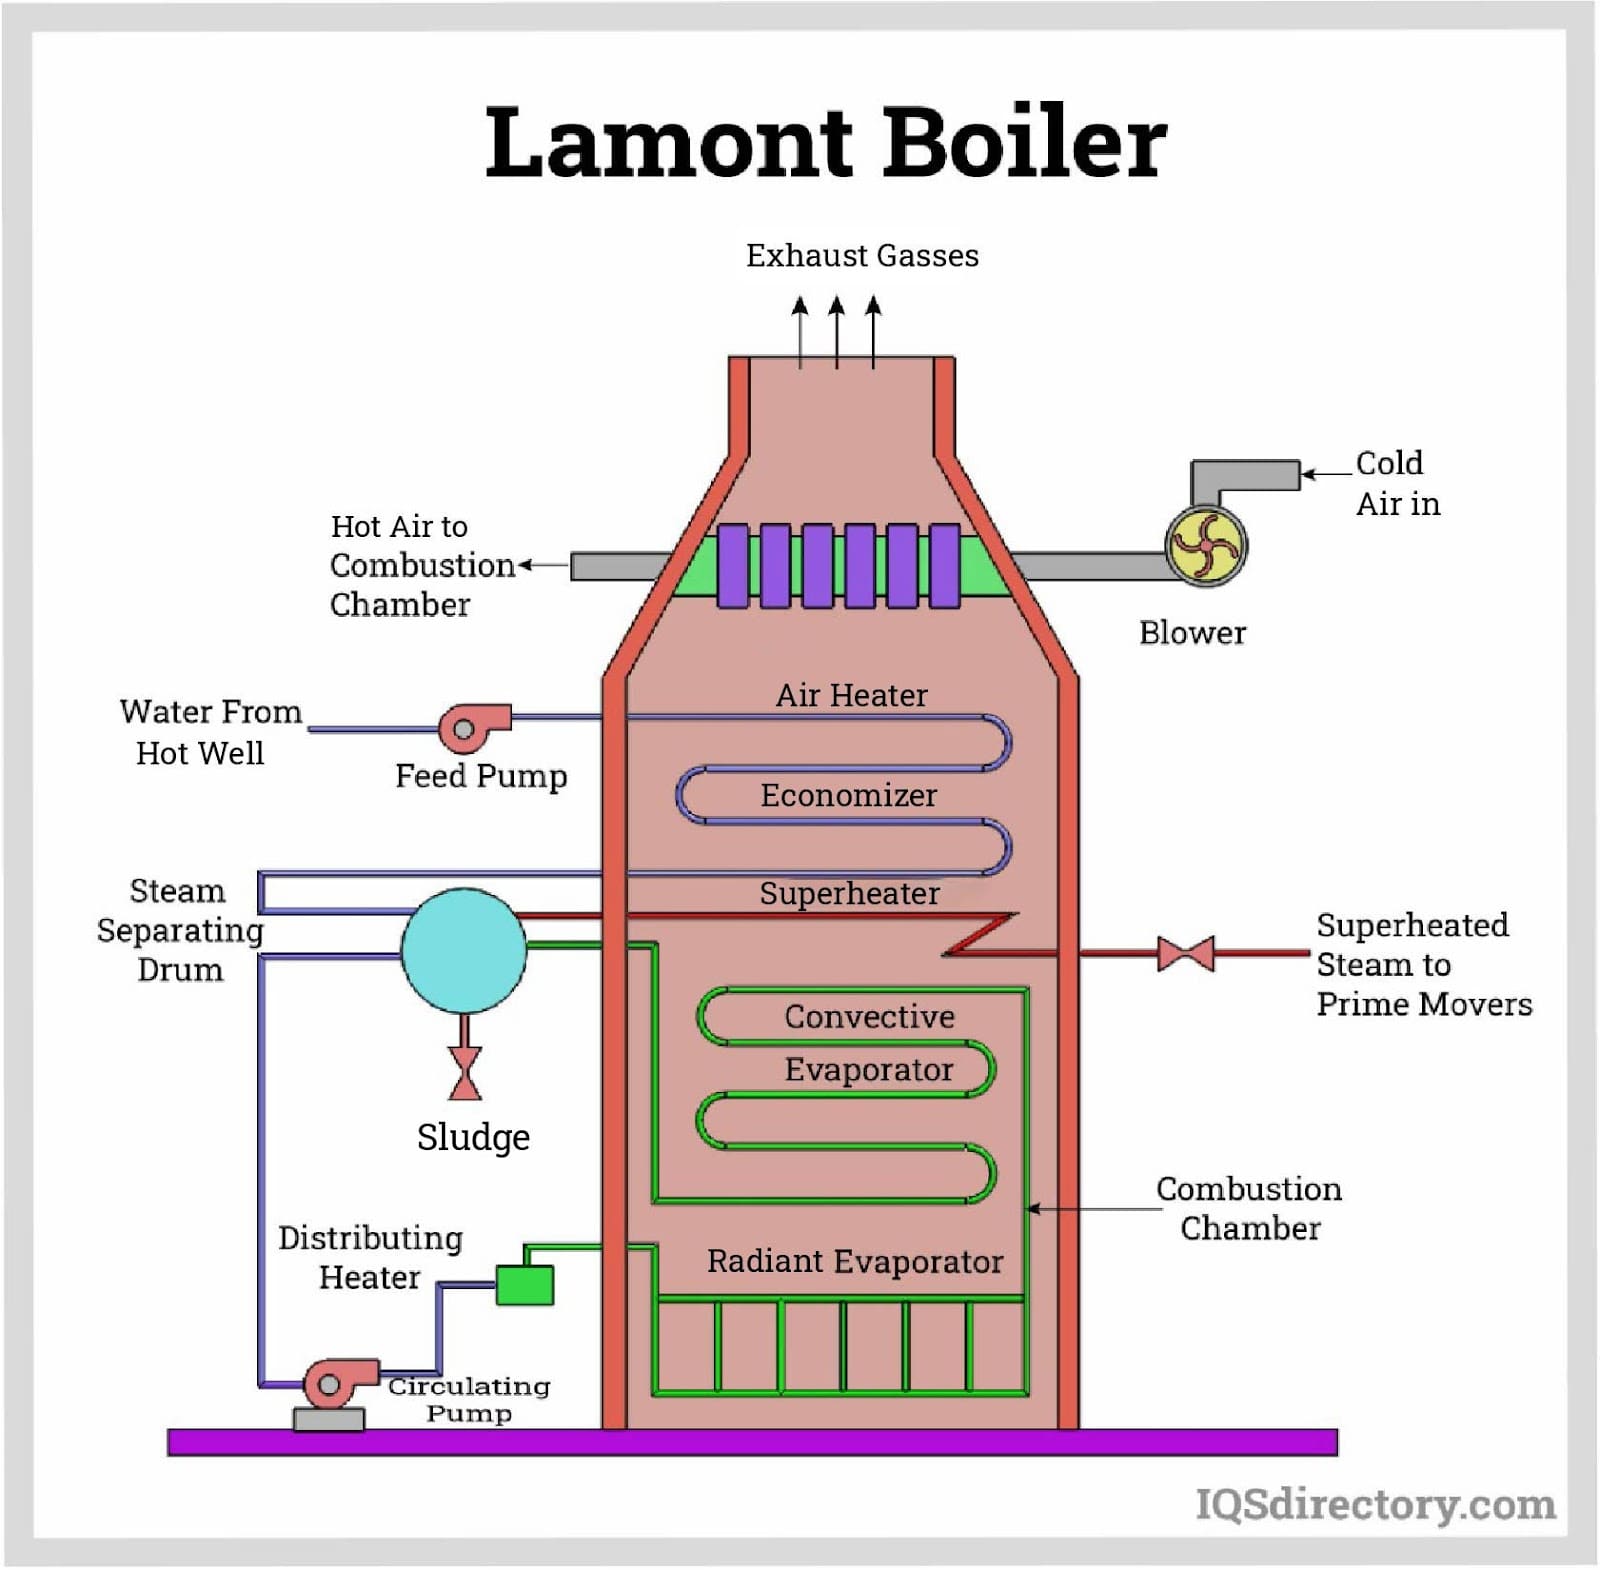 Lamont Boiler